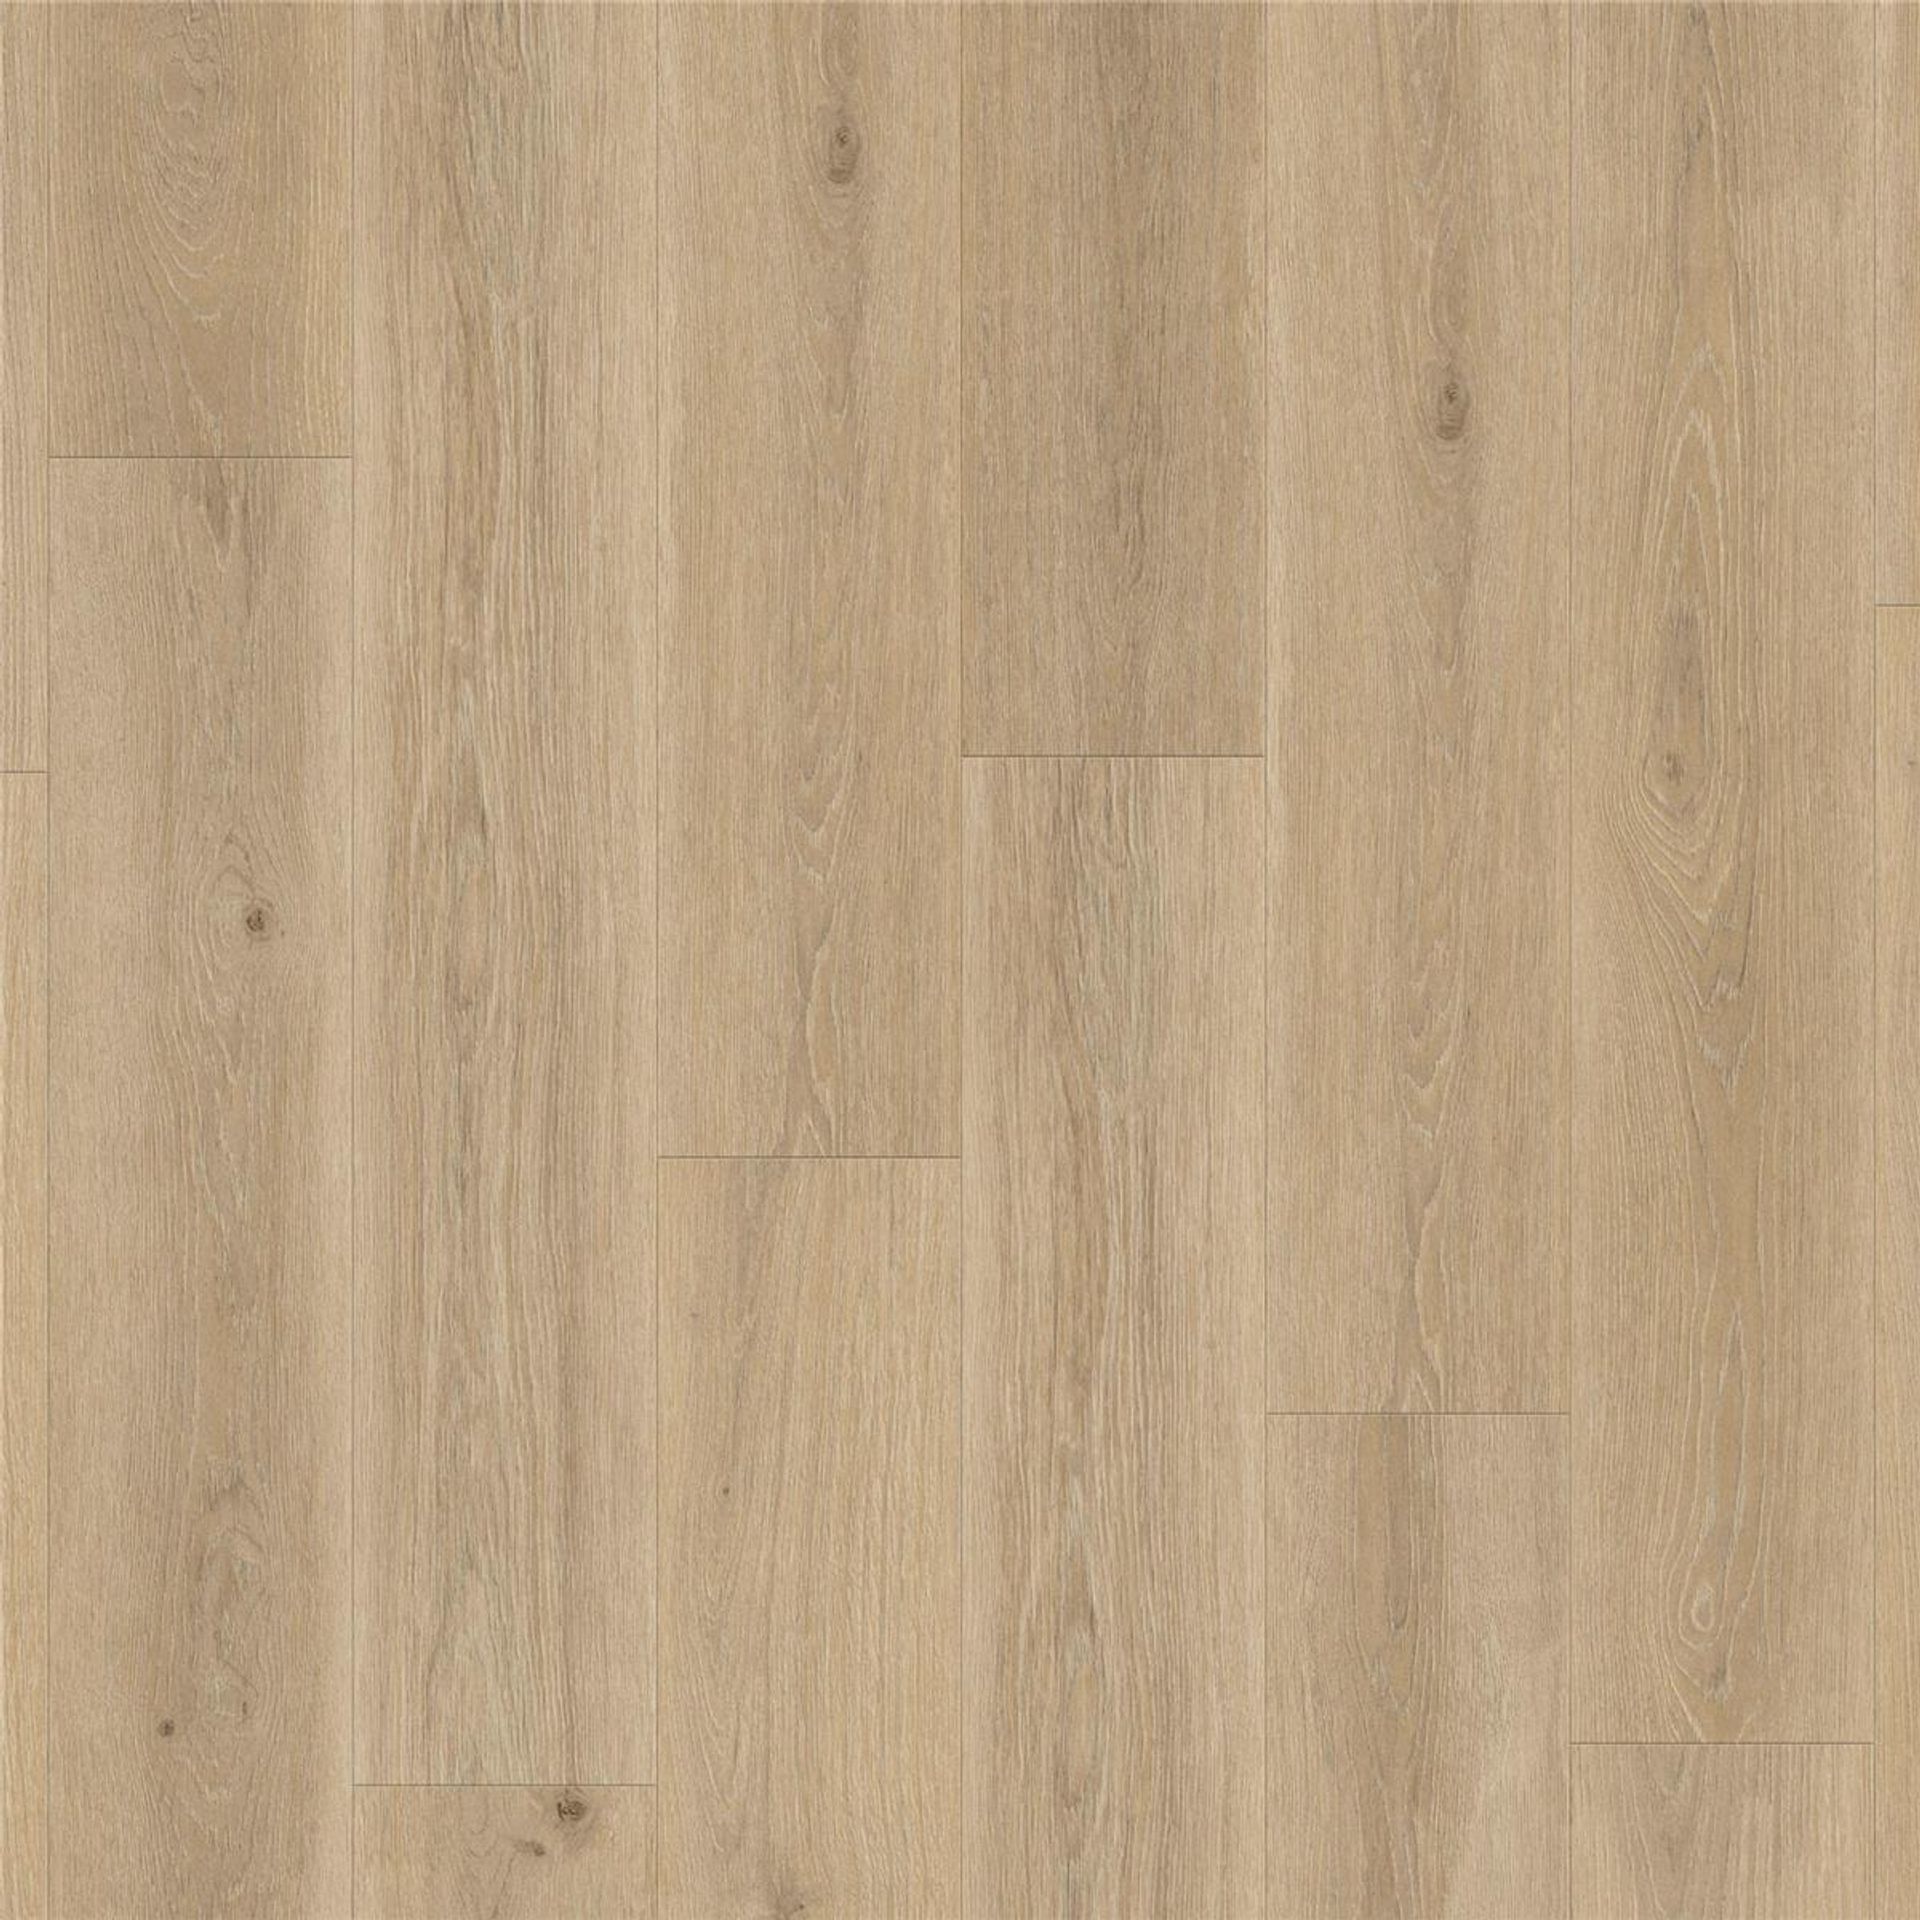 Designboden AUTHENTICS-Highland Oak-Golden Planke 120 cm x 20 cm - Nutzschichtdicke 0,70 mm